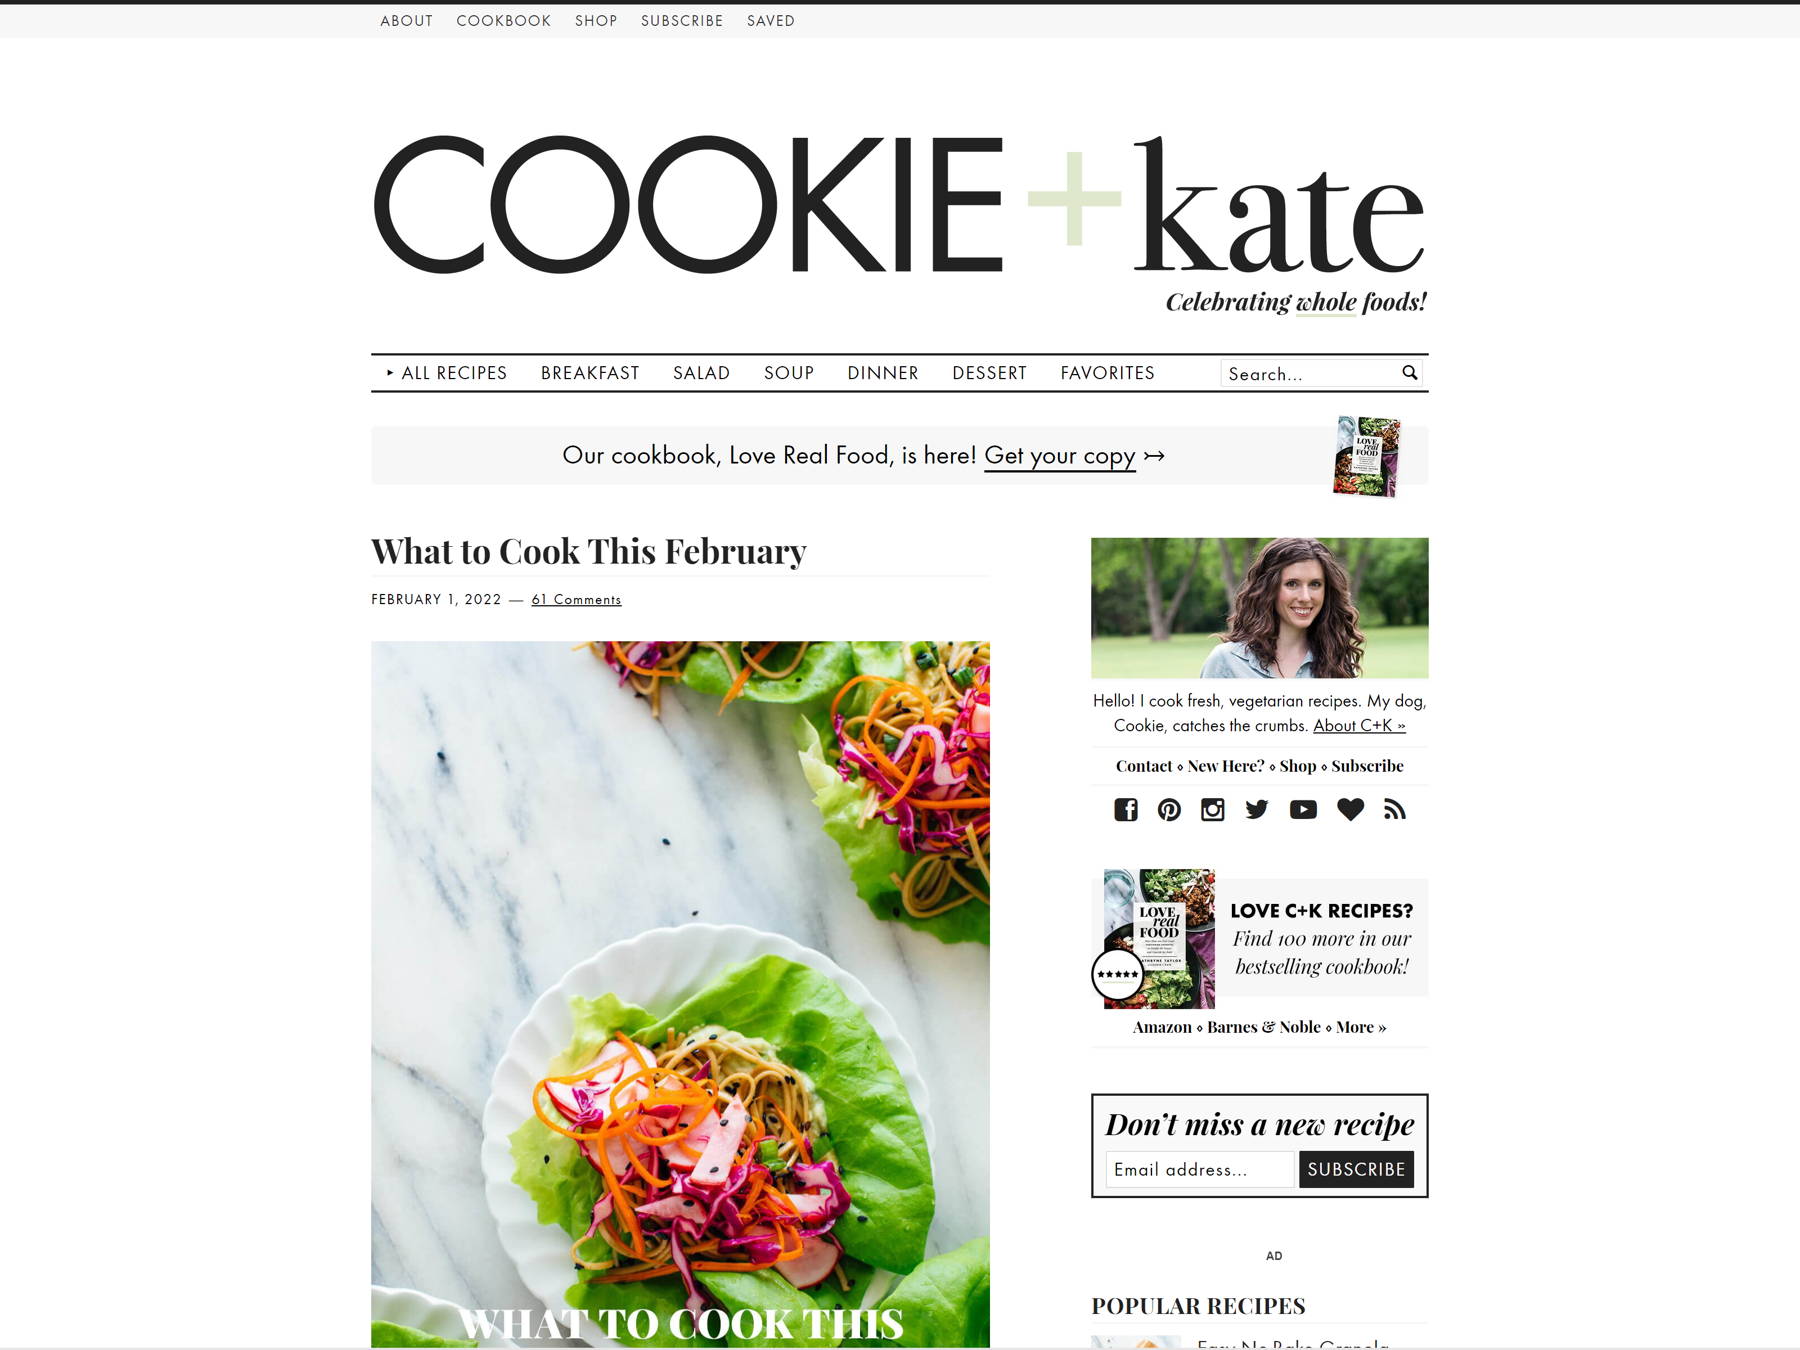 Скриншот Куки и Кейт из коллекции примеров блога.